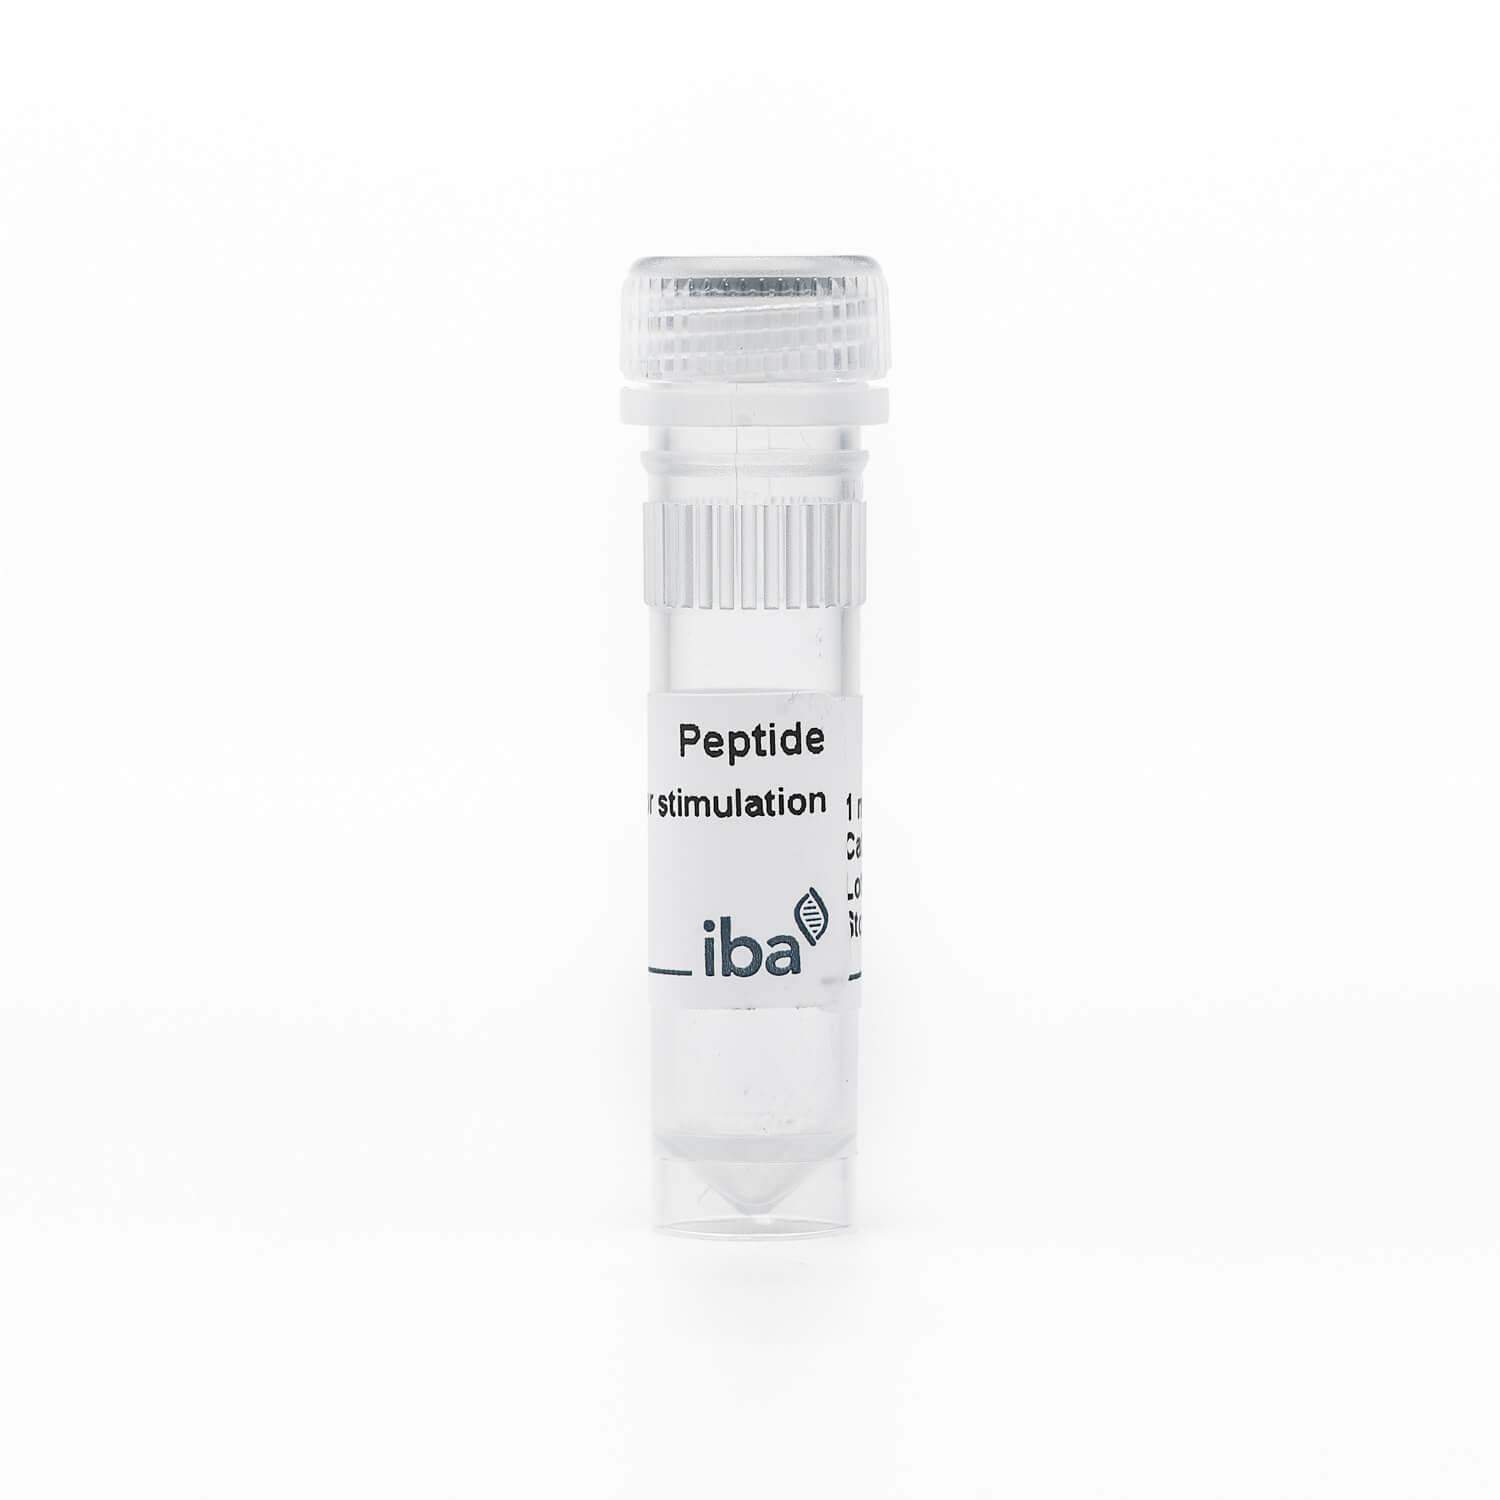 MAGE-A1 peptide EADPTGHSY (HLA-A*0101)